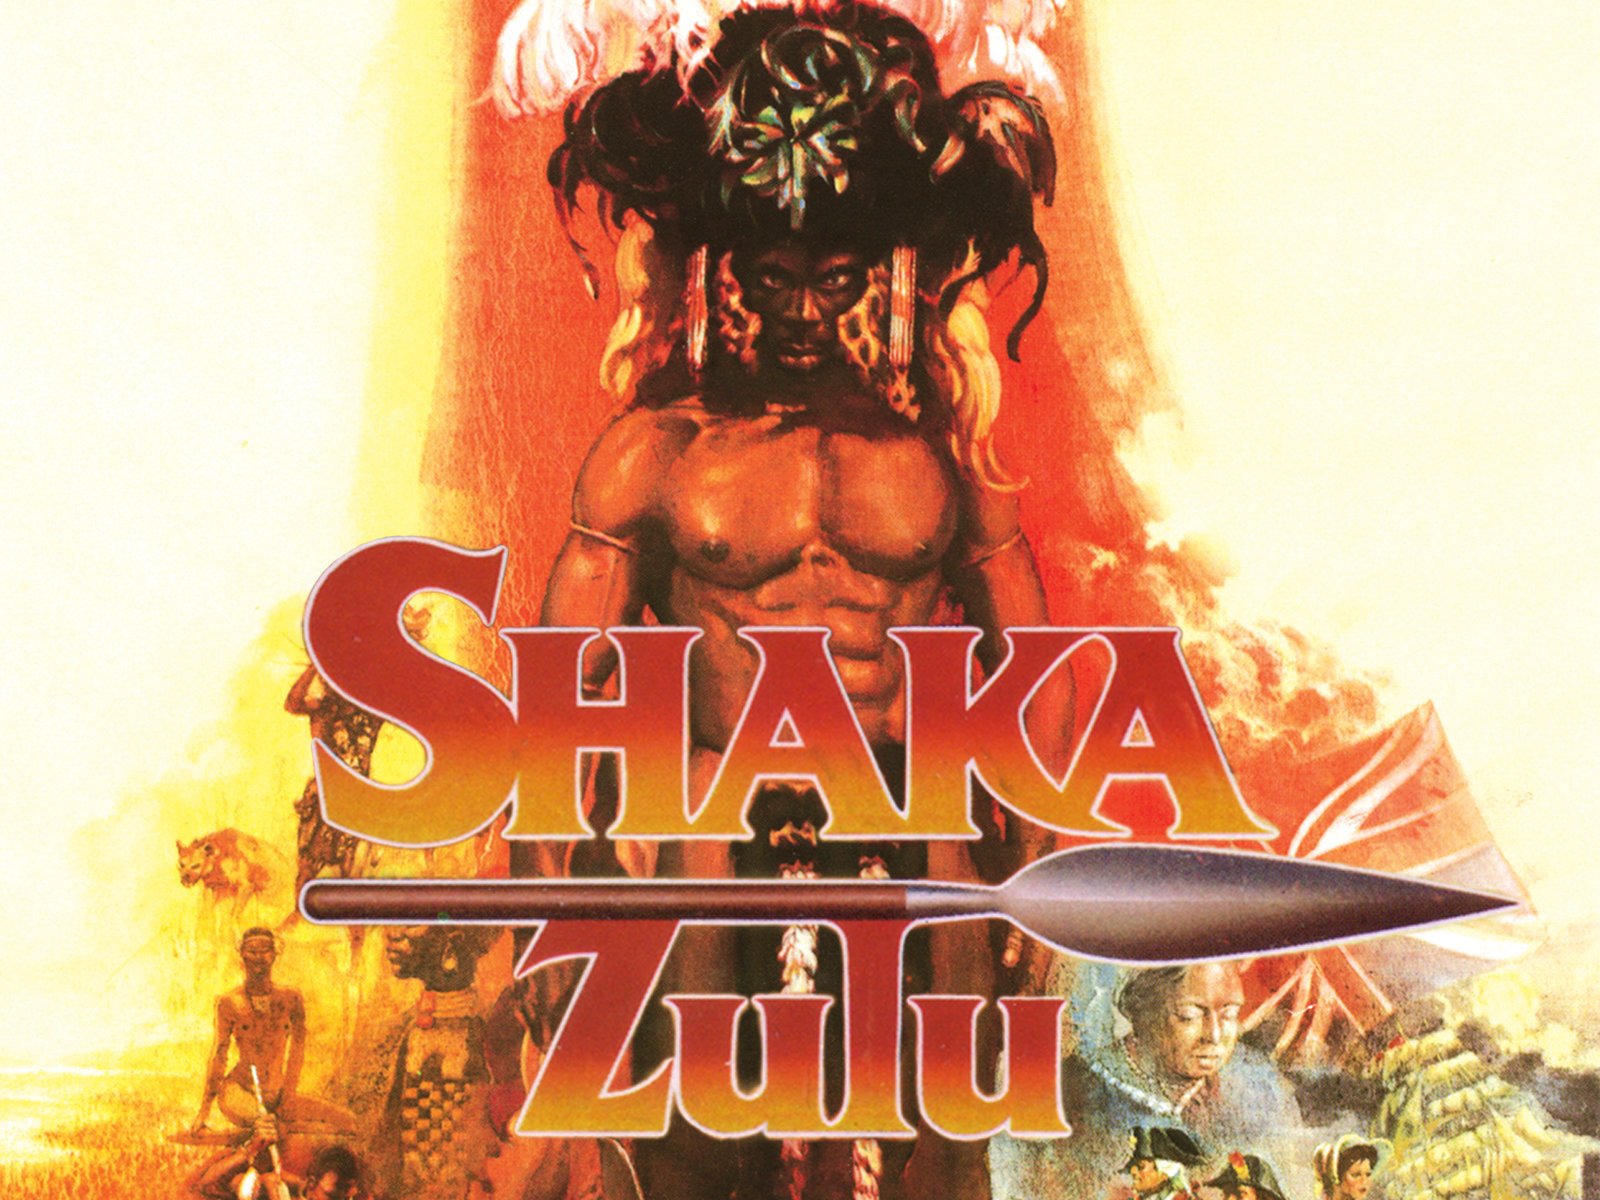 Shaka Zule